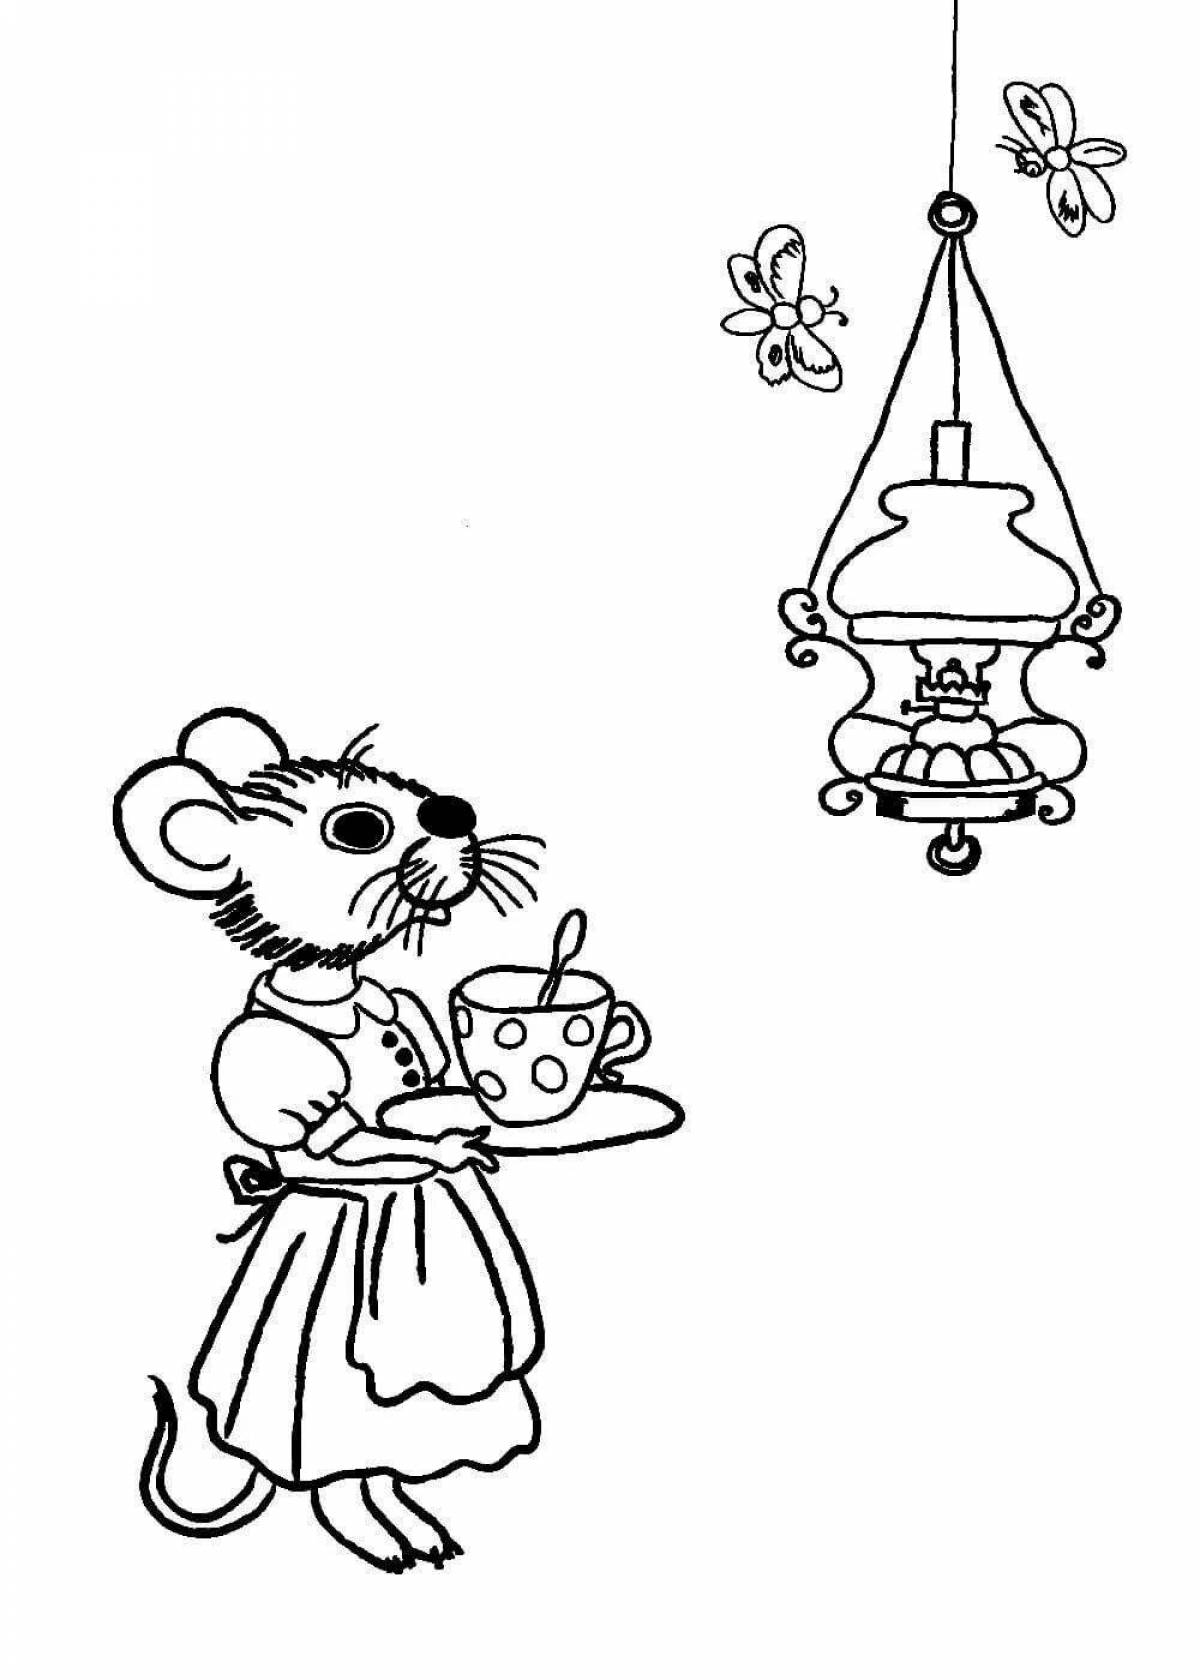 Раскраска к сказке о глупом мышонке Маршака для детей